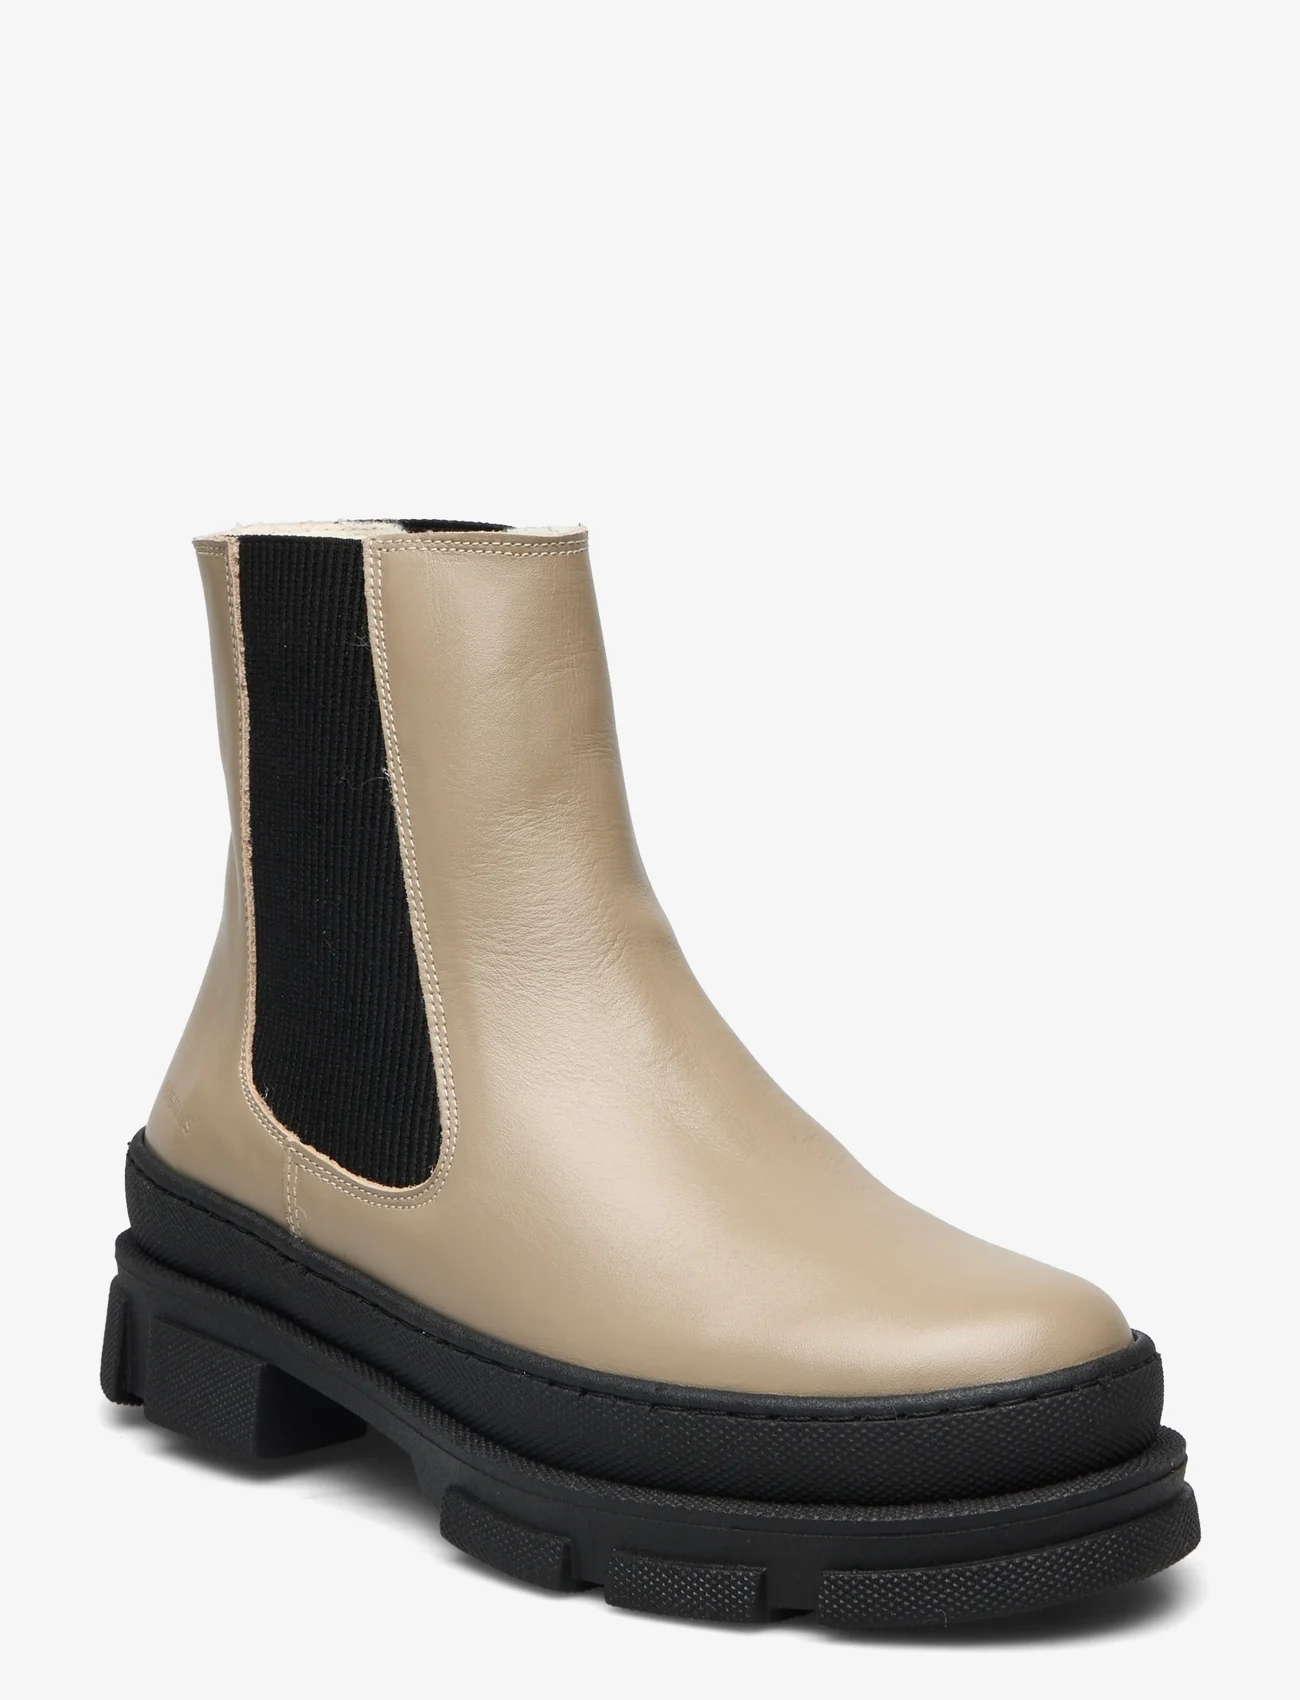 ANGULUS - Boots - flat - chelsea boots - 1571/019 beige/black - 0